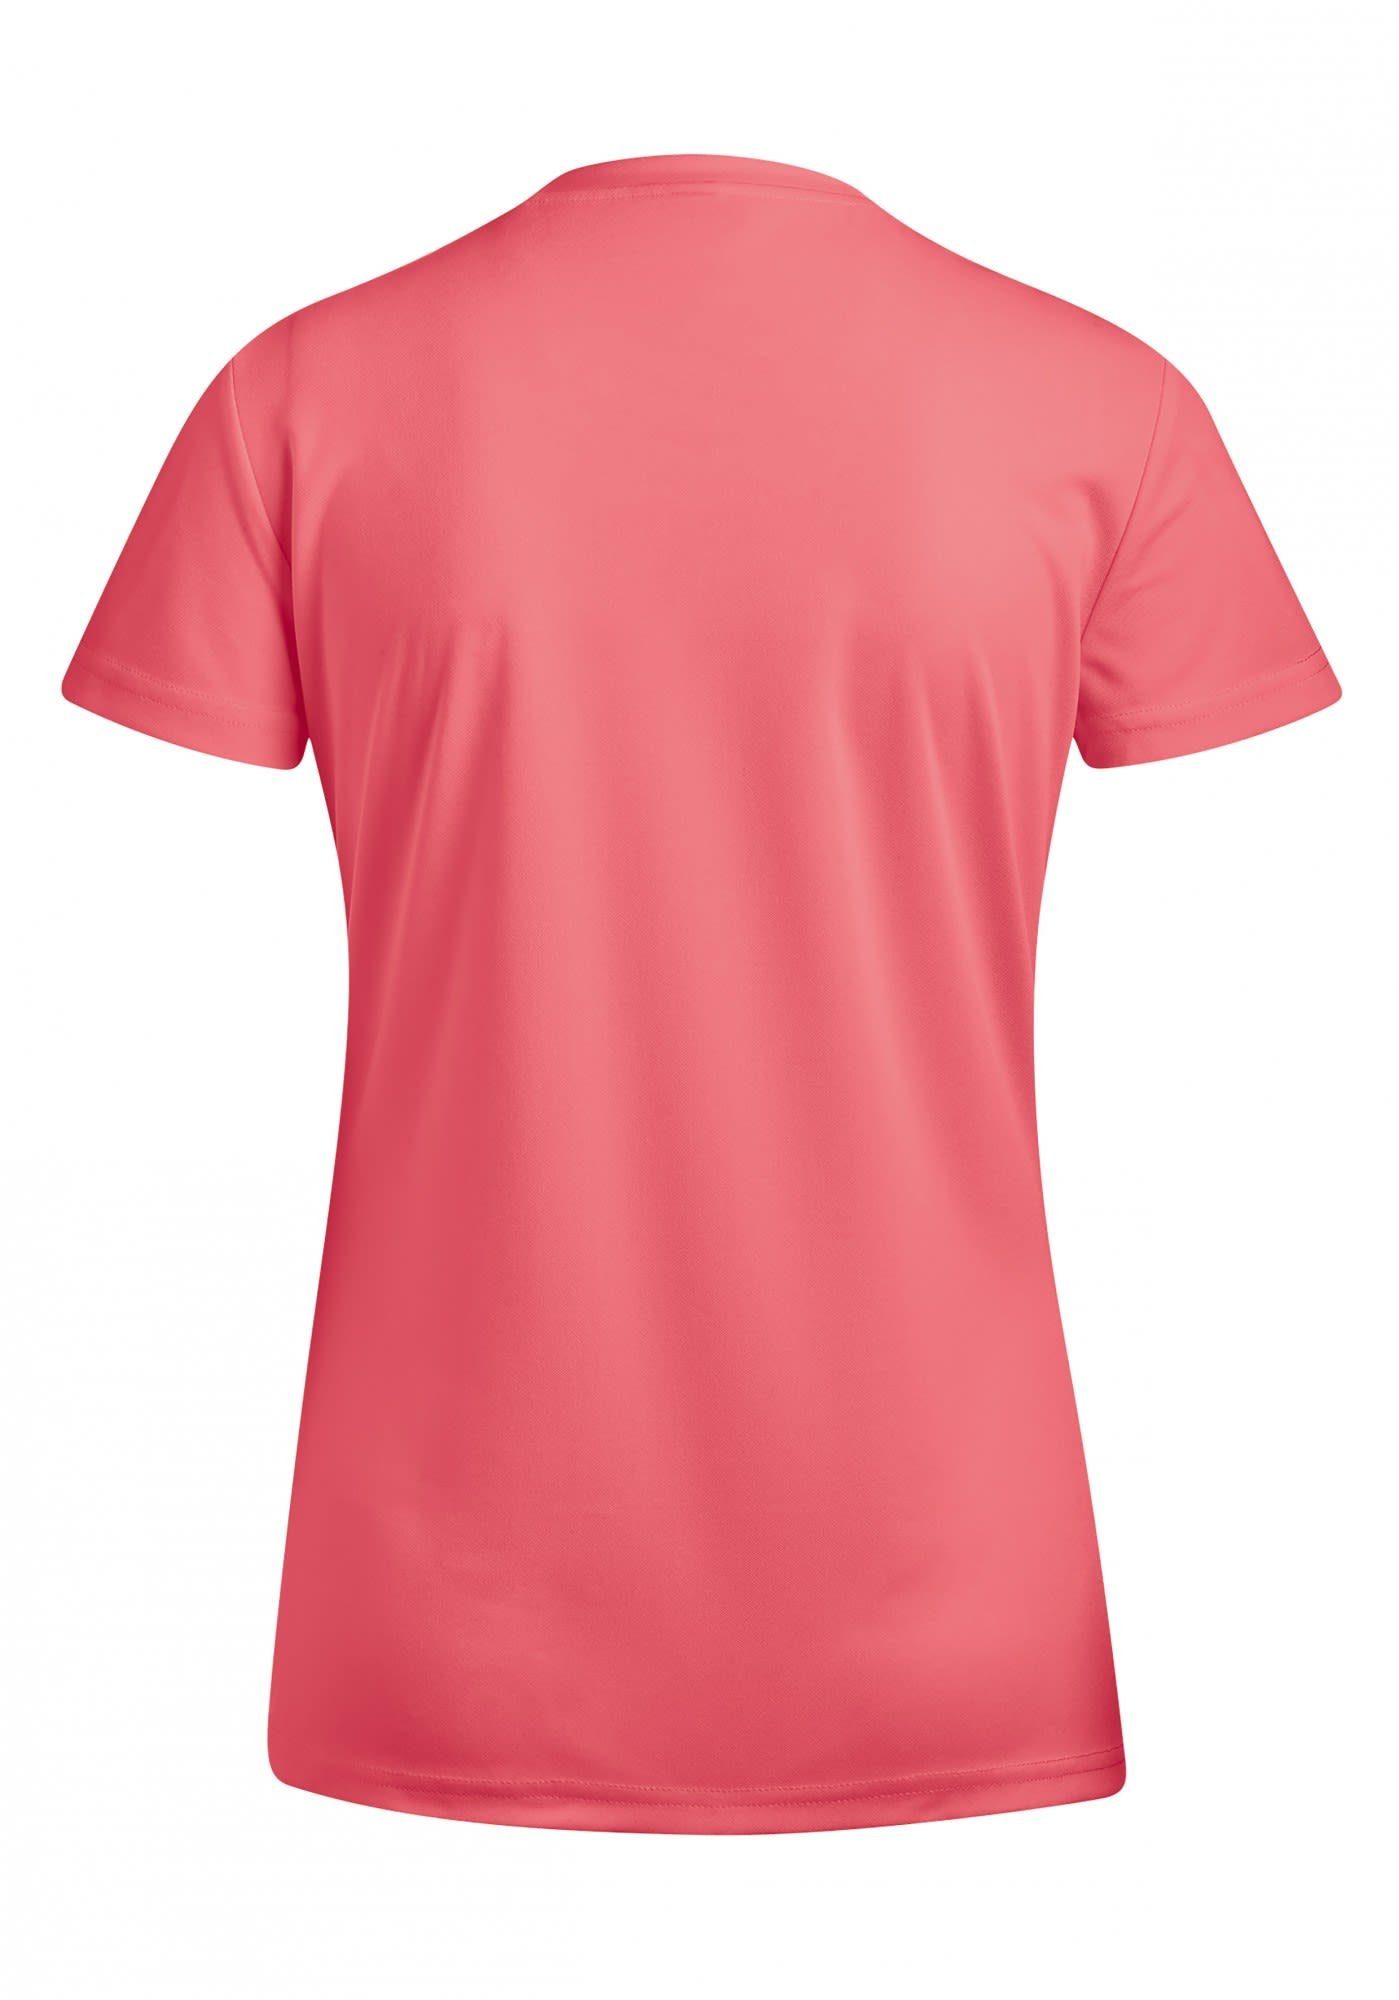 T-Shirt Sports schnell trocknend, Funktionelles Funktionsshirt und Waltraud Damen trocknendes komfortabel schnell Maier